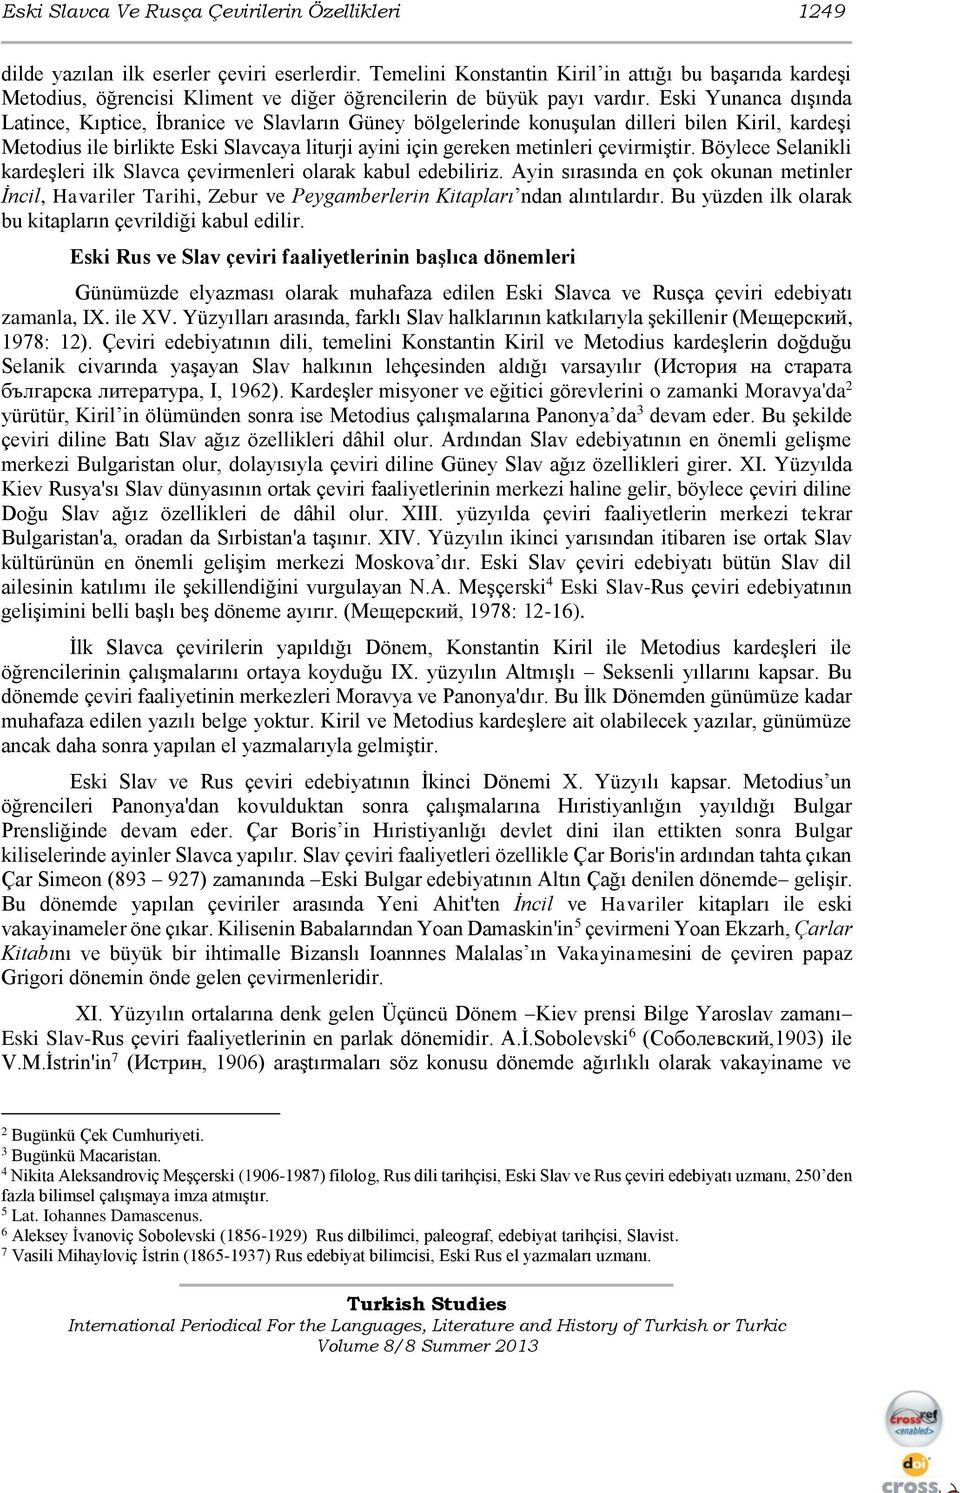 Eski Yunanca dışında Latince, Kıptice, İbranice ve Slavların Güney bölgelerinde konuşulan dilleri bilen Kiril, kardeşi Metodius ile birlikte Eski Slavcaya liturji ayini için gereken metinleri